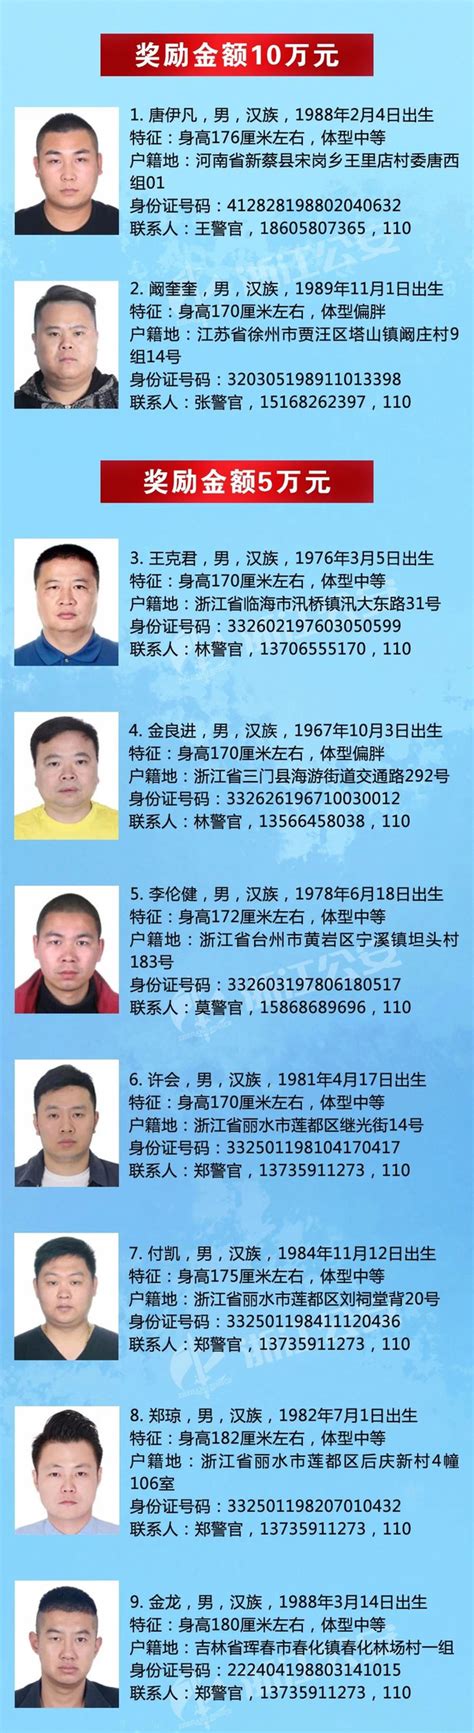 最高奖励10万元，浙江警方悬赏通缉46名涉黑涉恶在逃人员|界面新闻 · 快讯